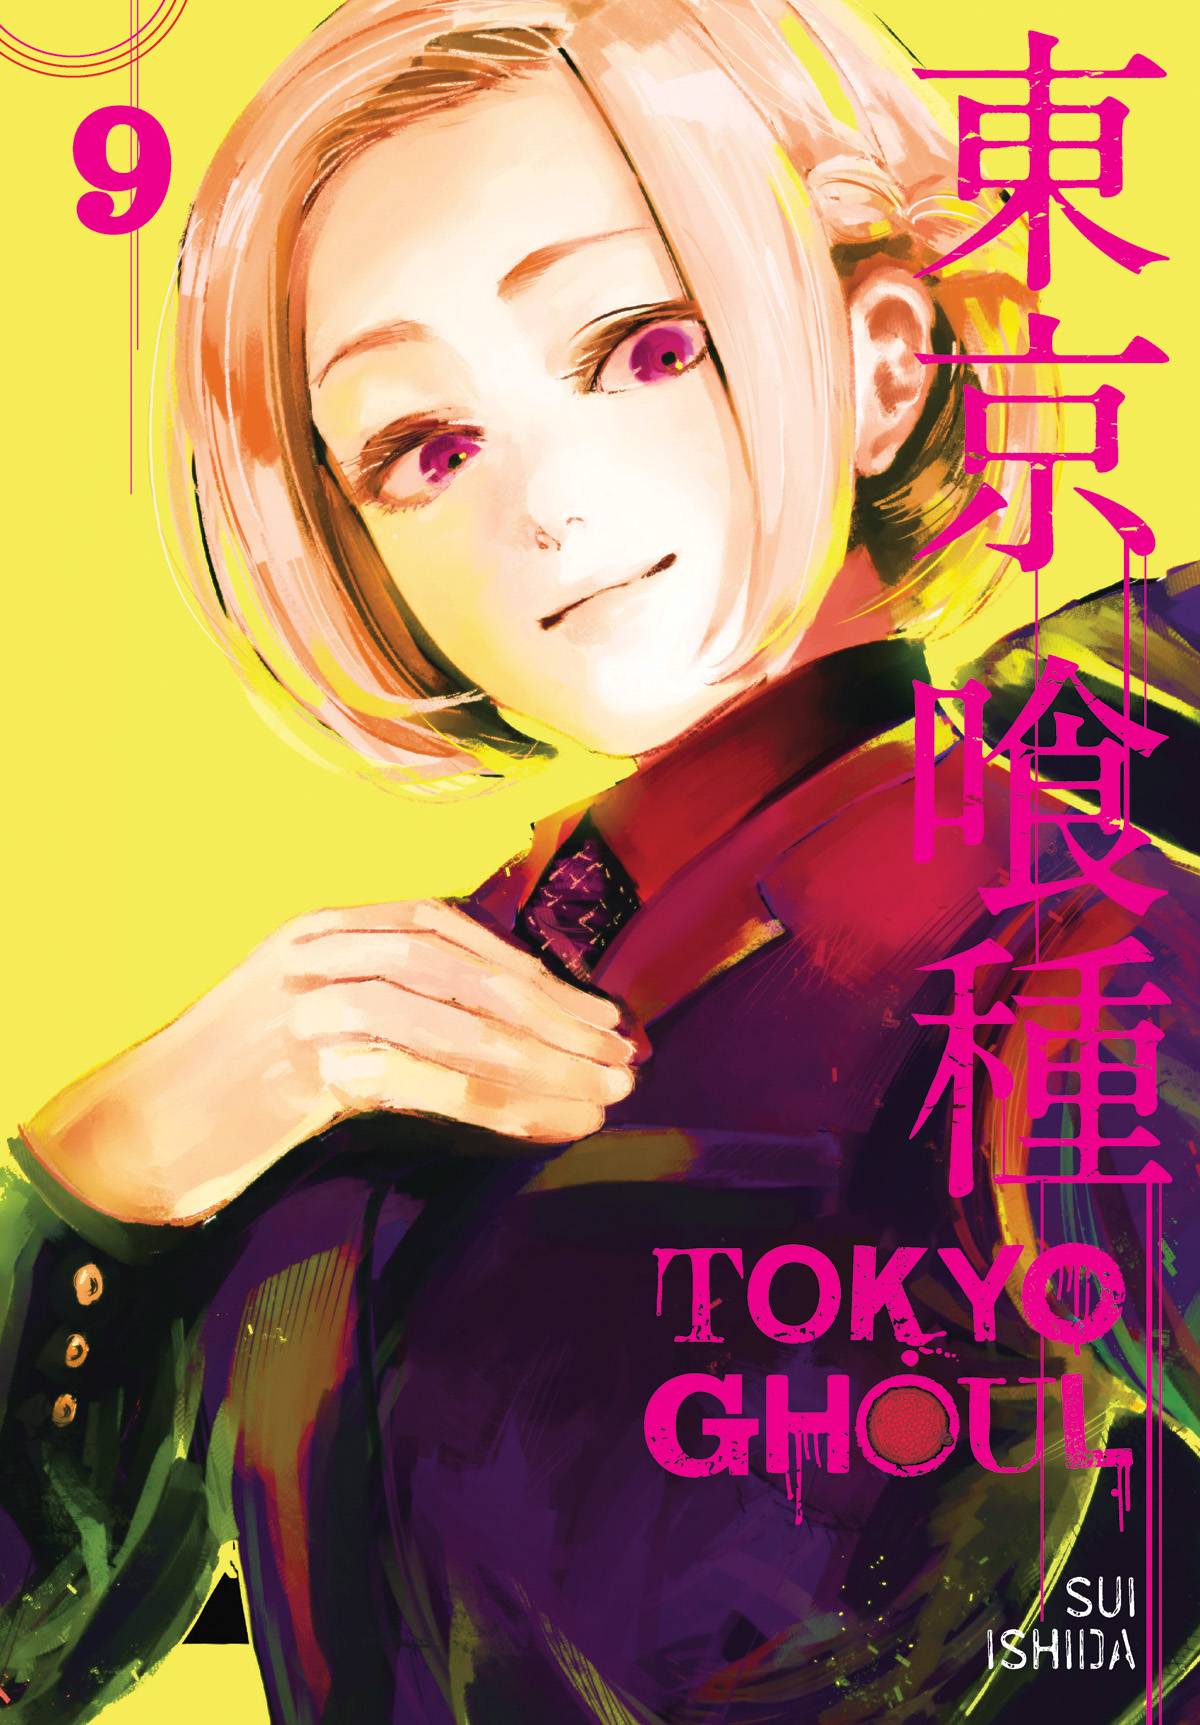 Tokyo Ghoul Manga Volume 9